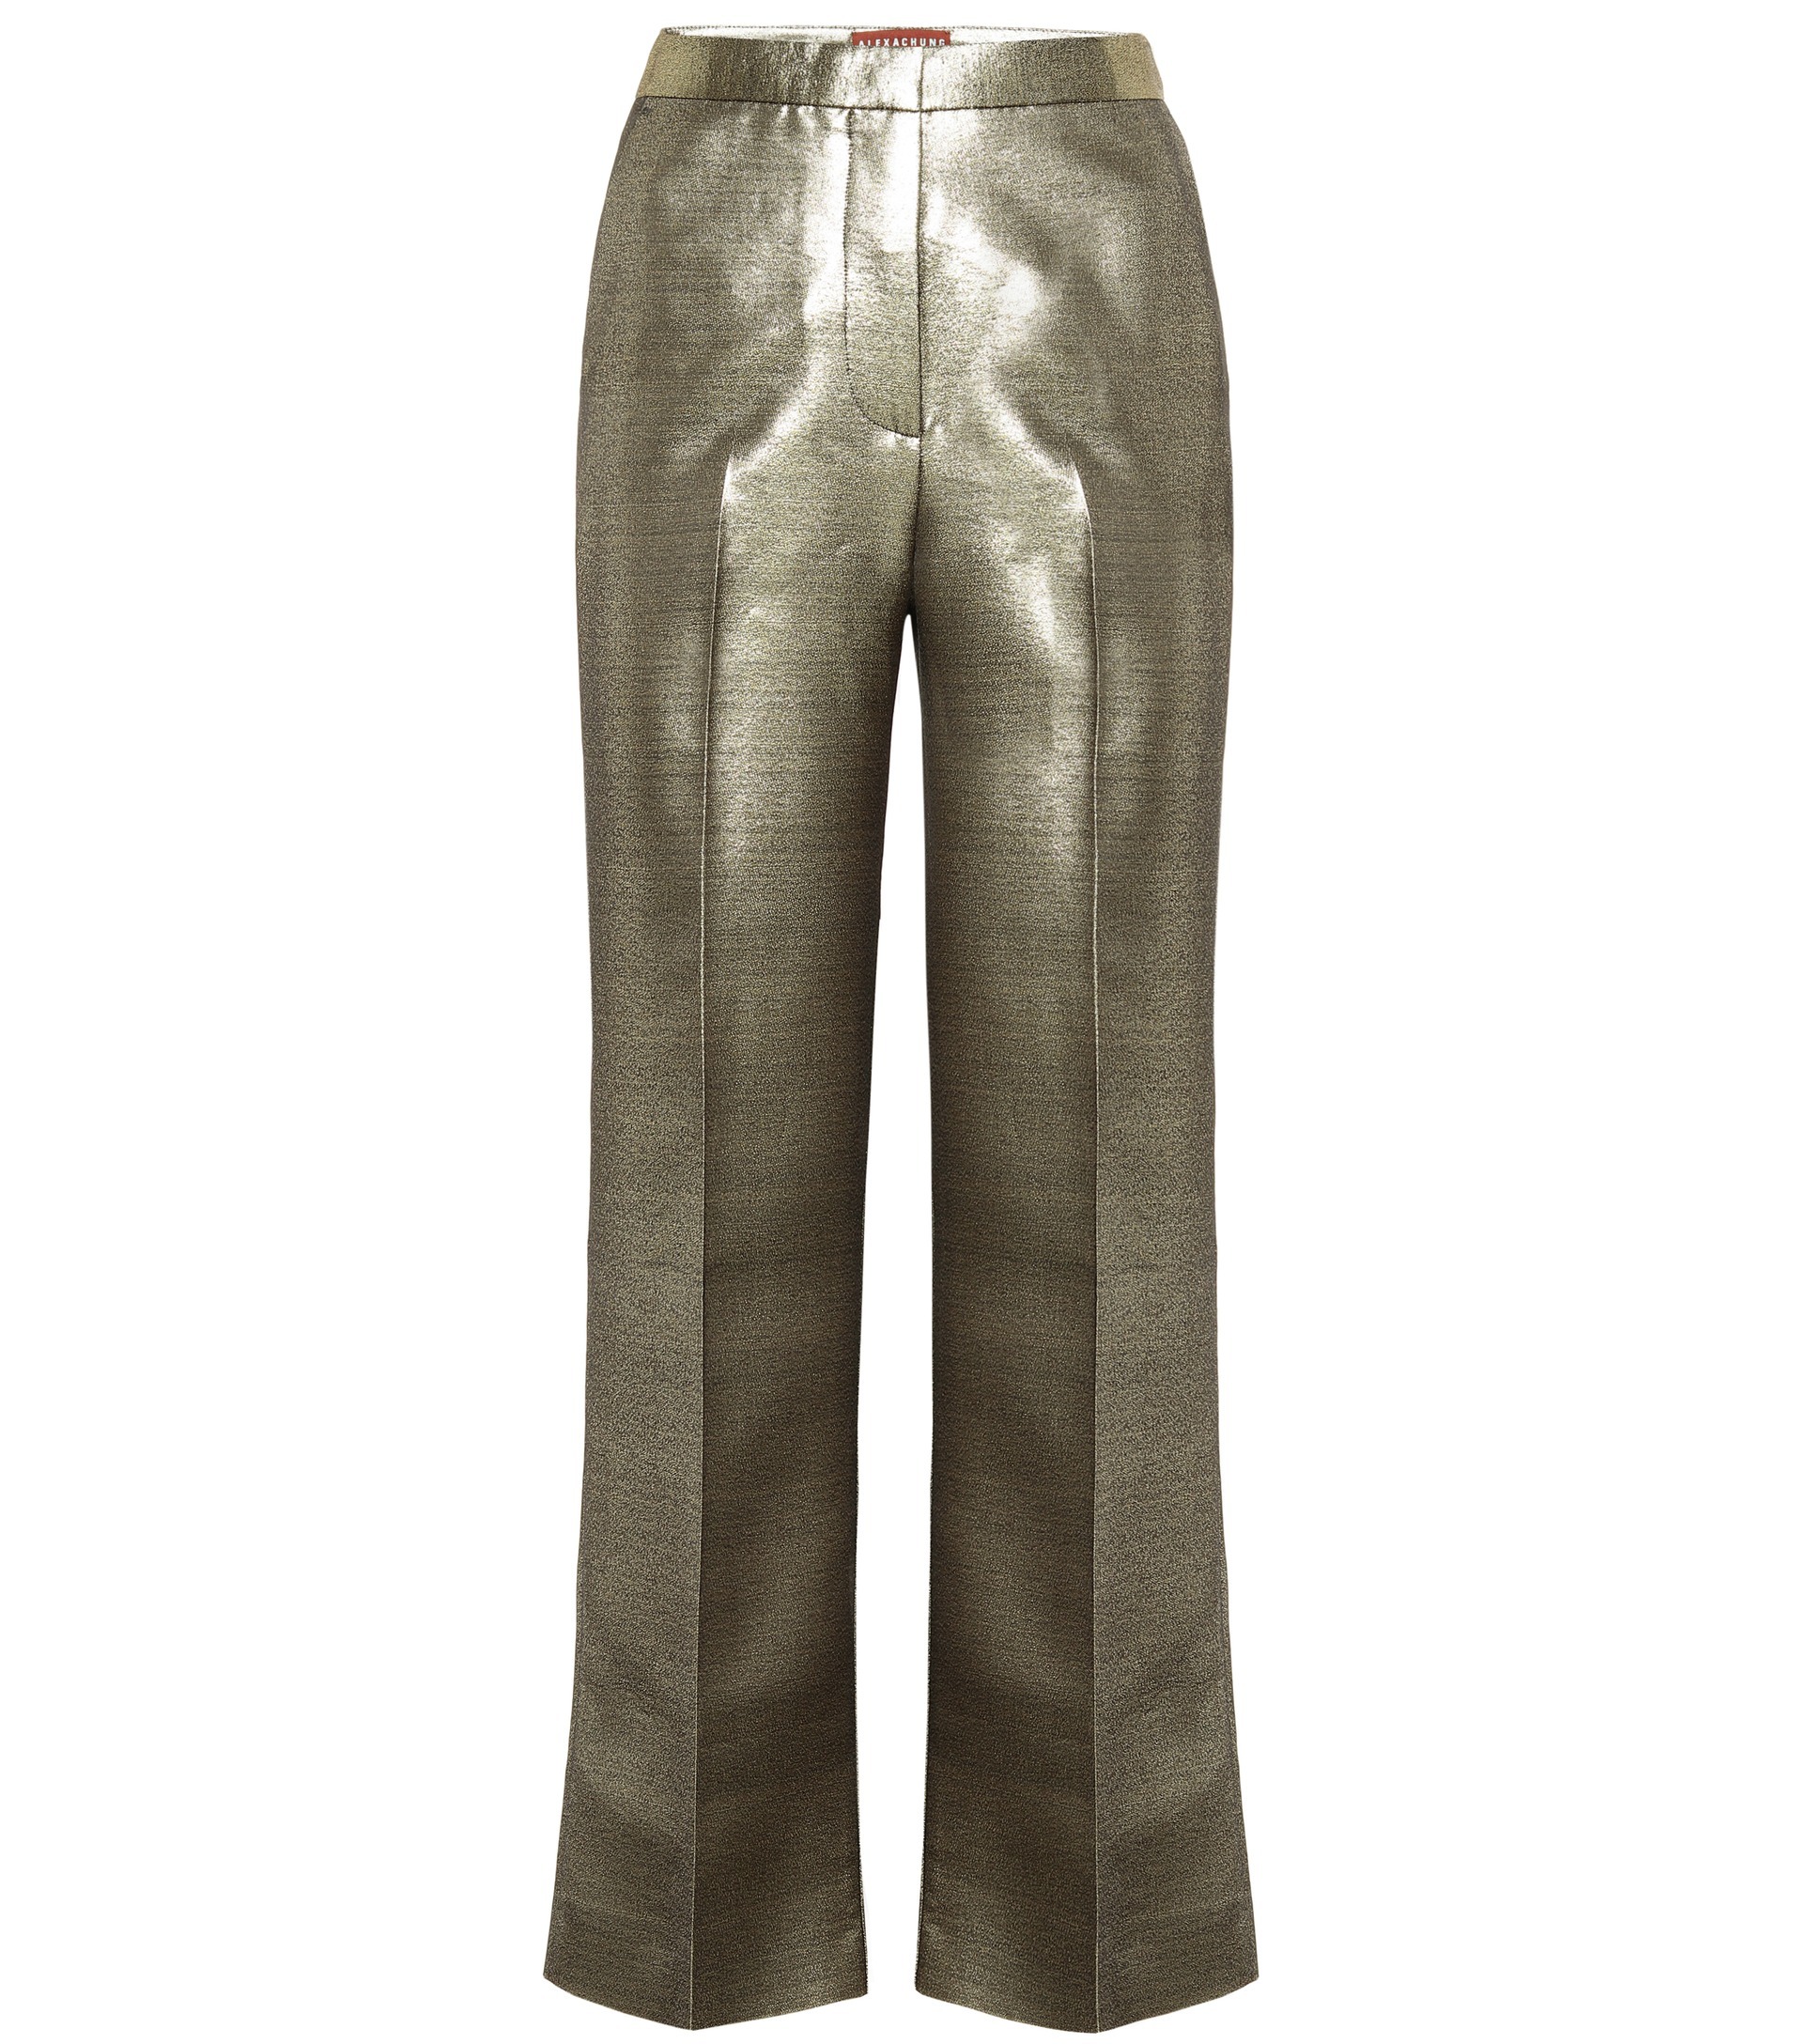 Pantalón metálico, de Alex Chung.